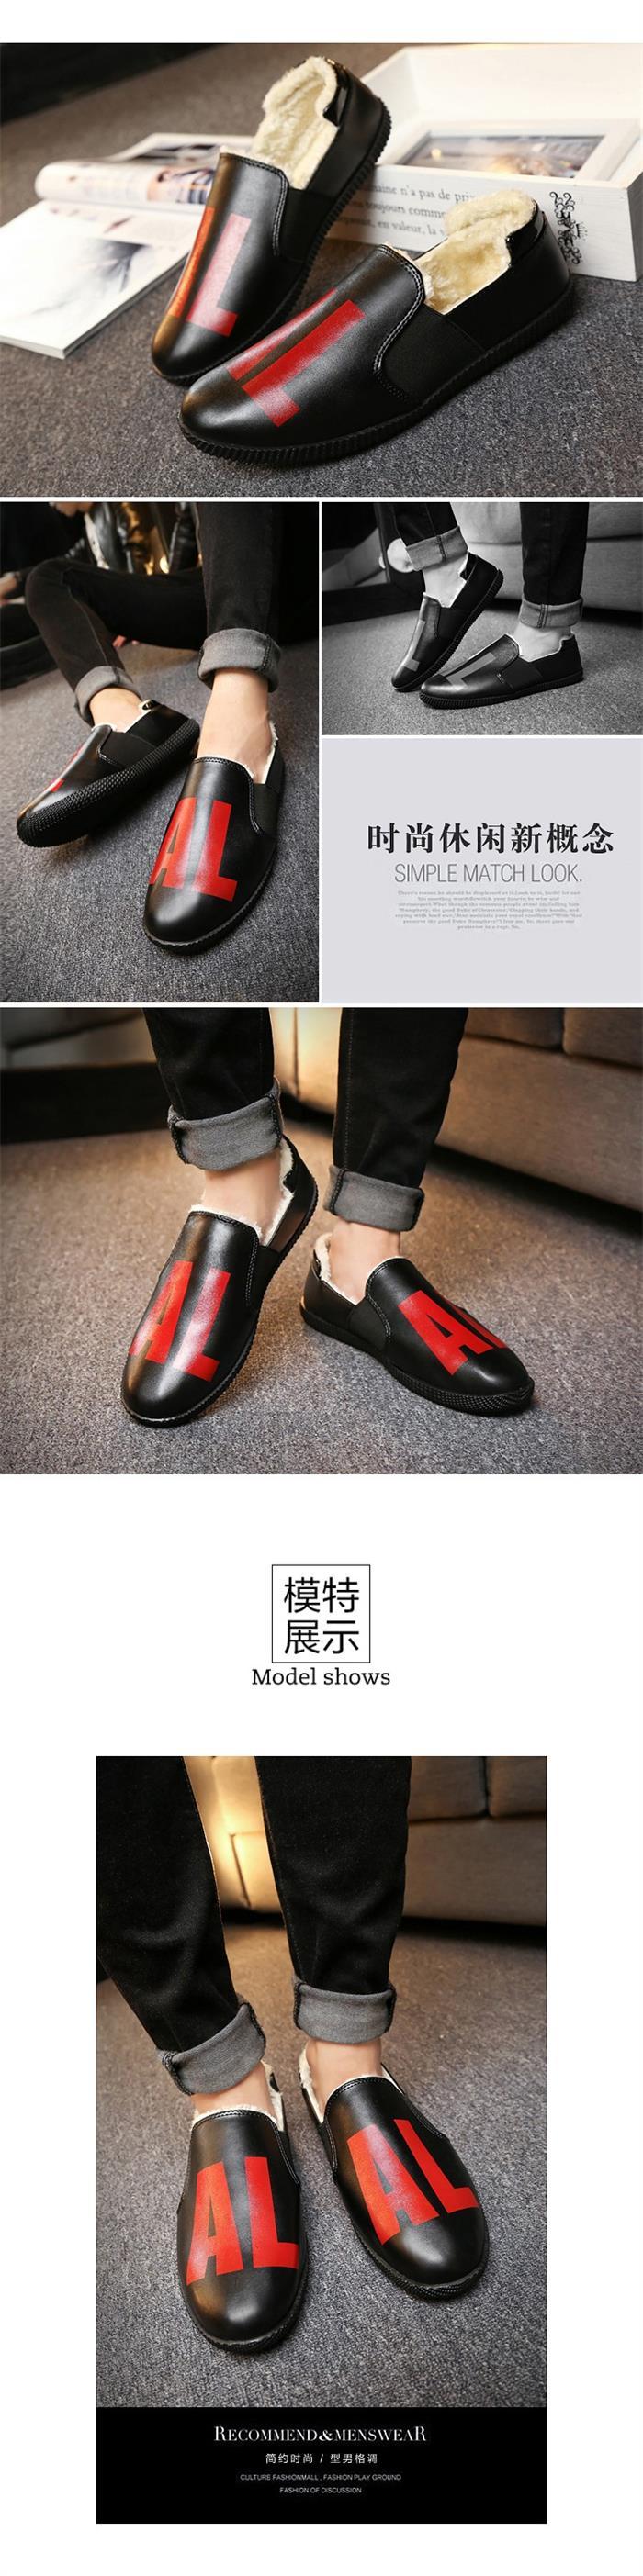 新款冬季豆豆鞋男鞋社会小伙韩版潮鞋精神冬天皮鞋加绒二棉鞋